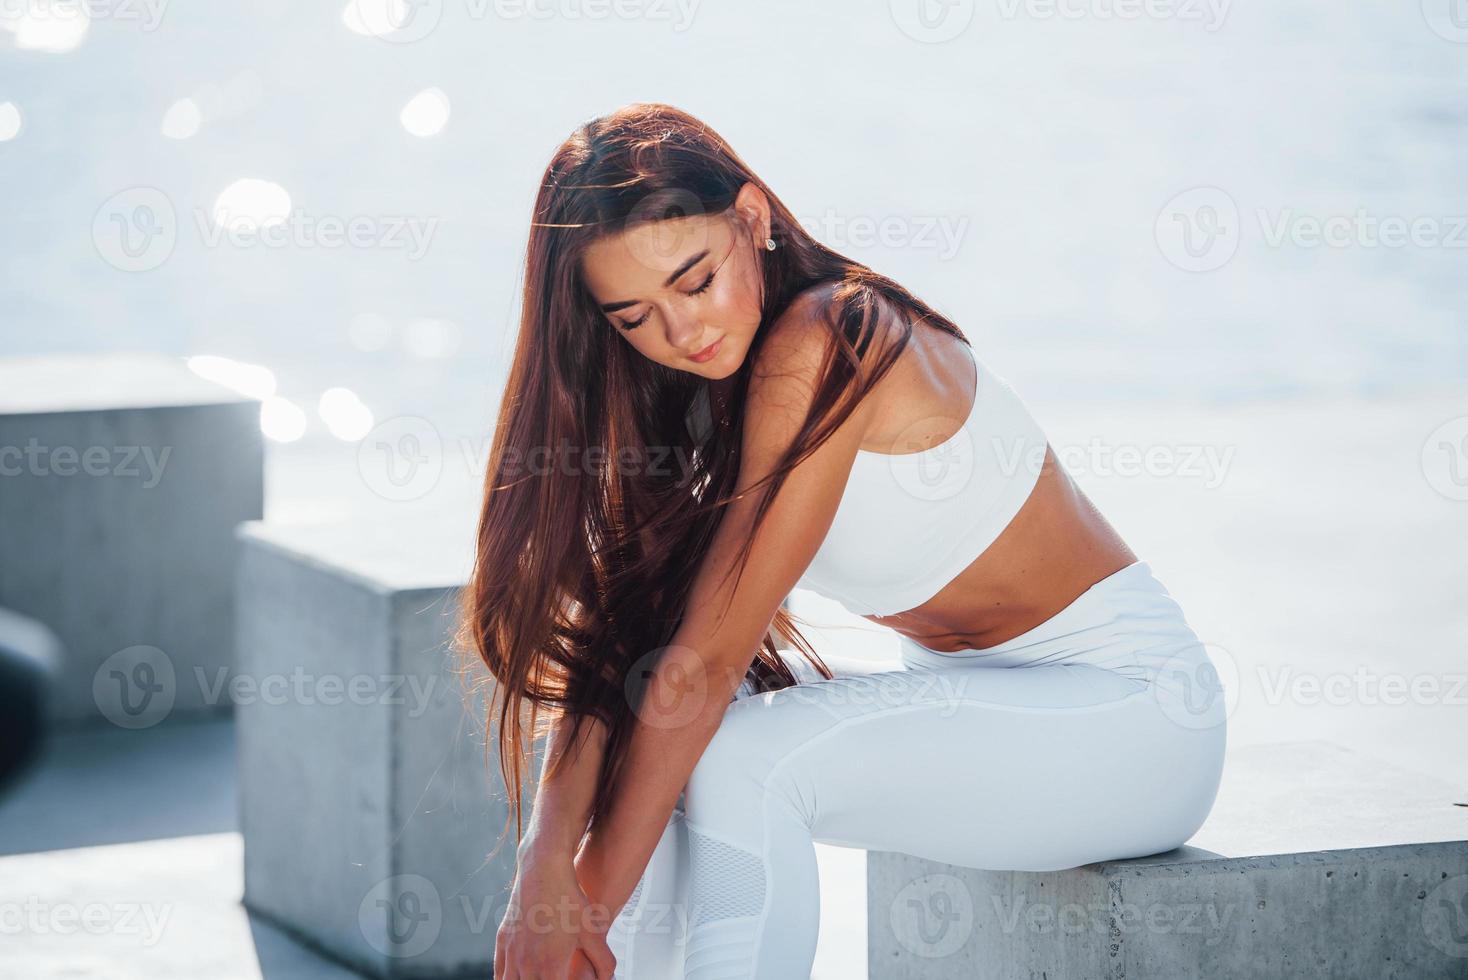 se sienta en el cubo de cemento. mujer fitness descansando cerca del lago durante el día. hermosa luz del sol foto